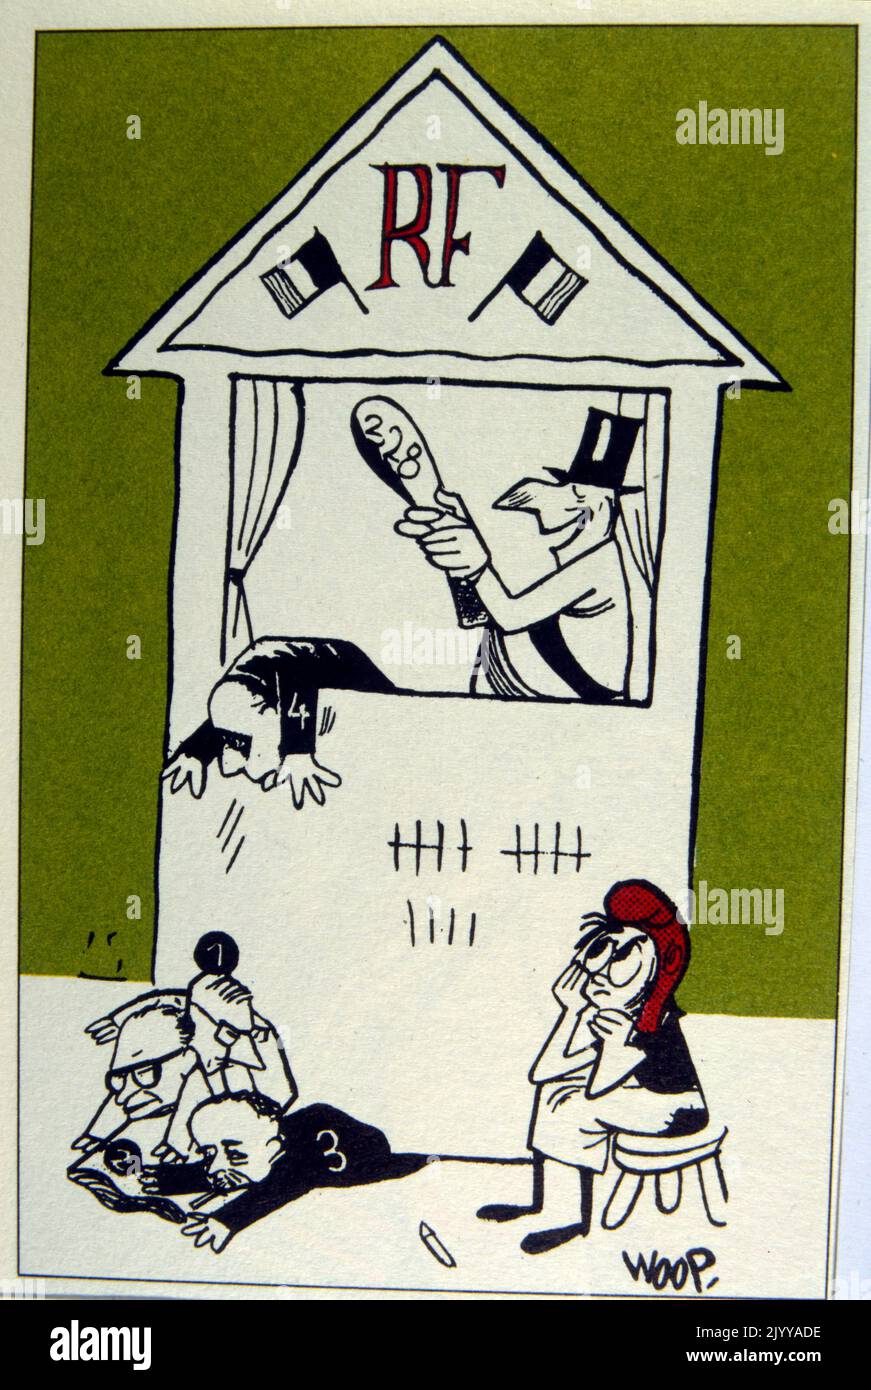 Illustration colorée d'un coup de poing et Judy montrent personnifier des figures politiques d'une manière satirique. Illustré par Woop. Banque D'Images